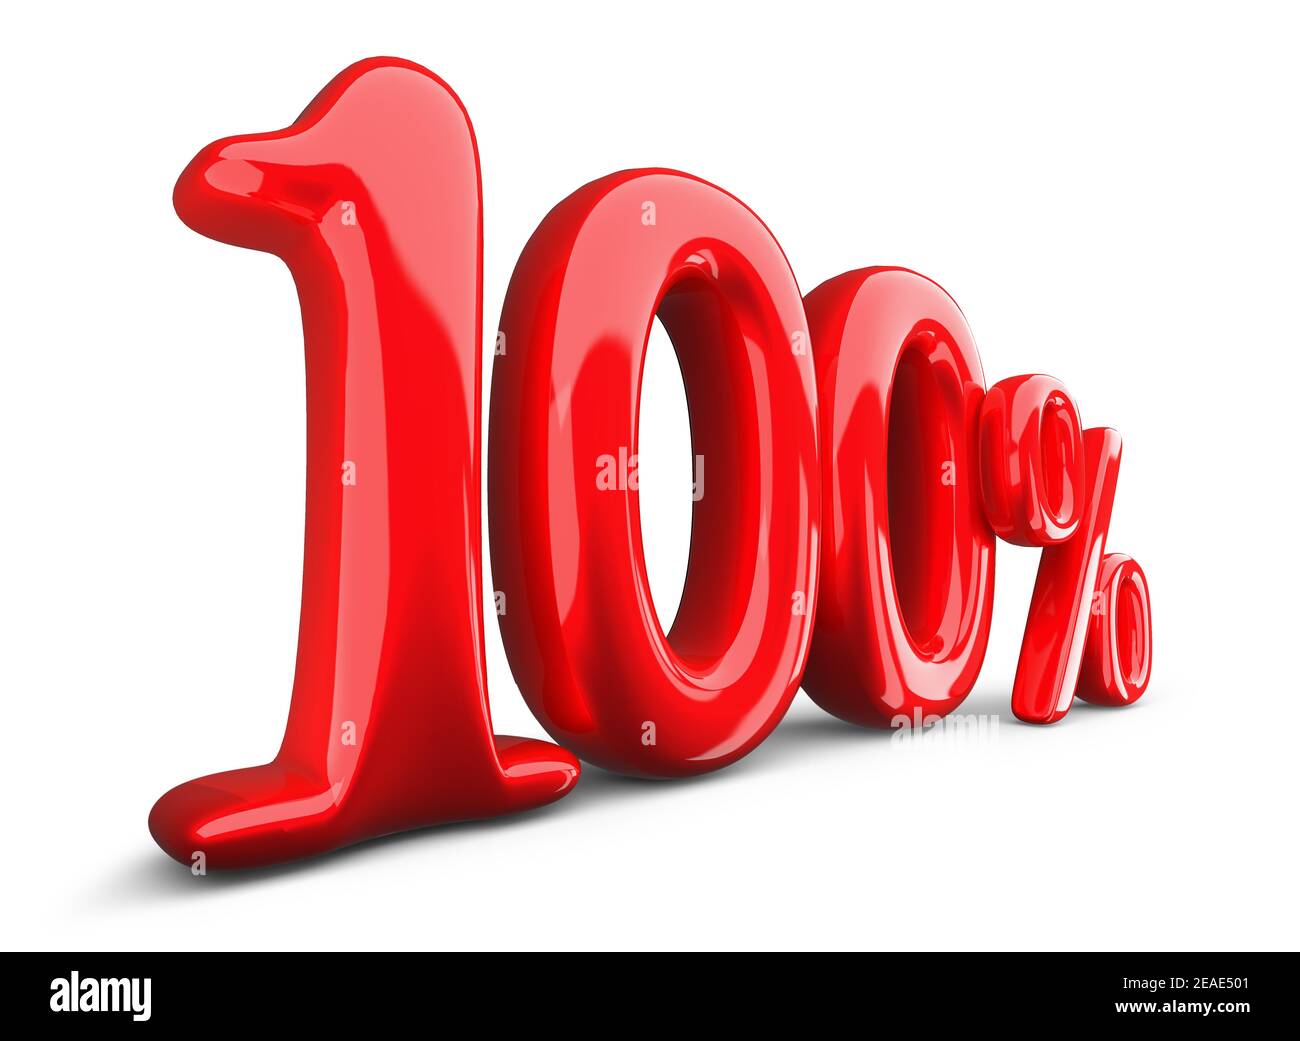 simbolo rosso cento per cento, 100% su sfondo bianco, rendering 3d. Foto Stock